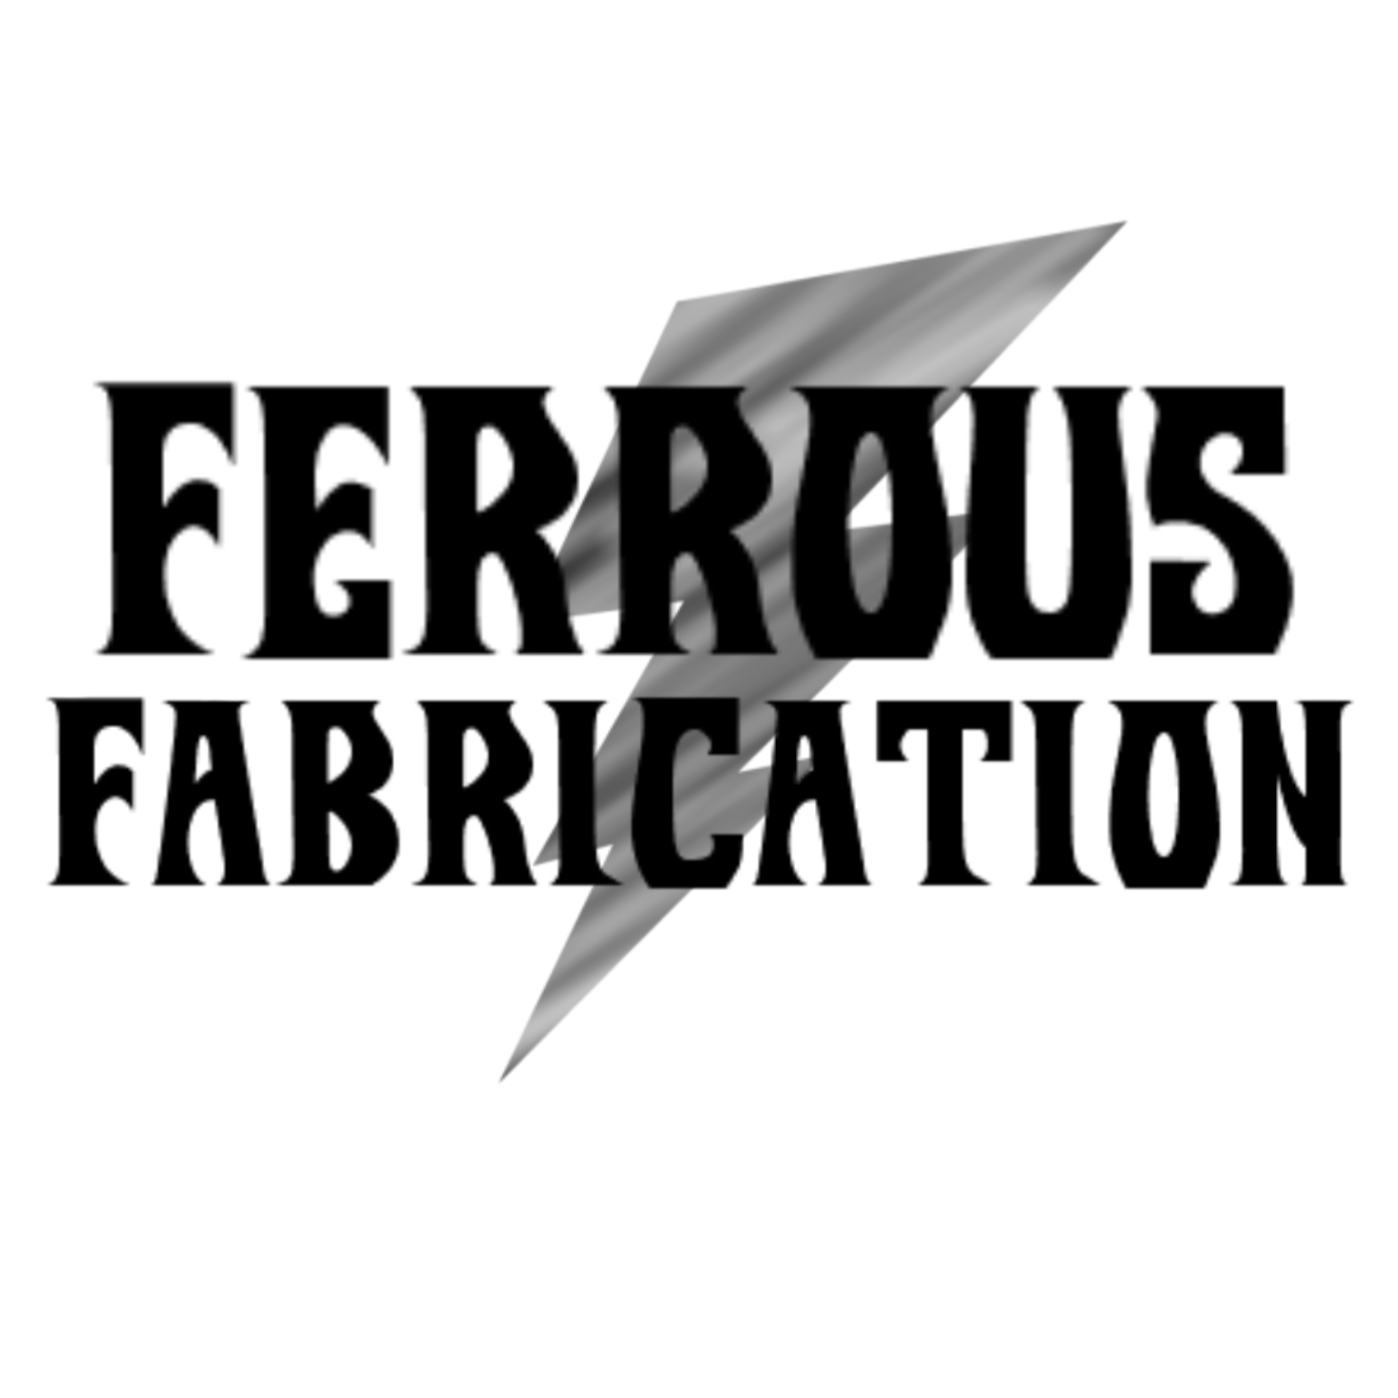 Ferrous Fabrication